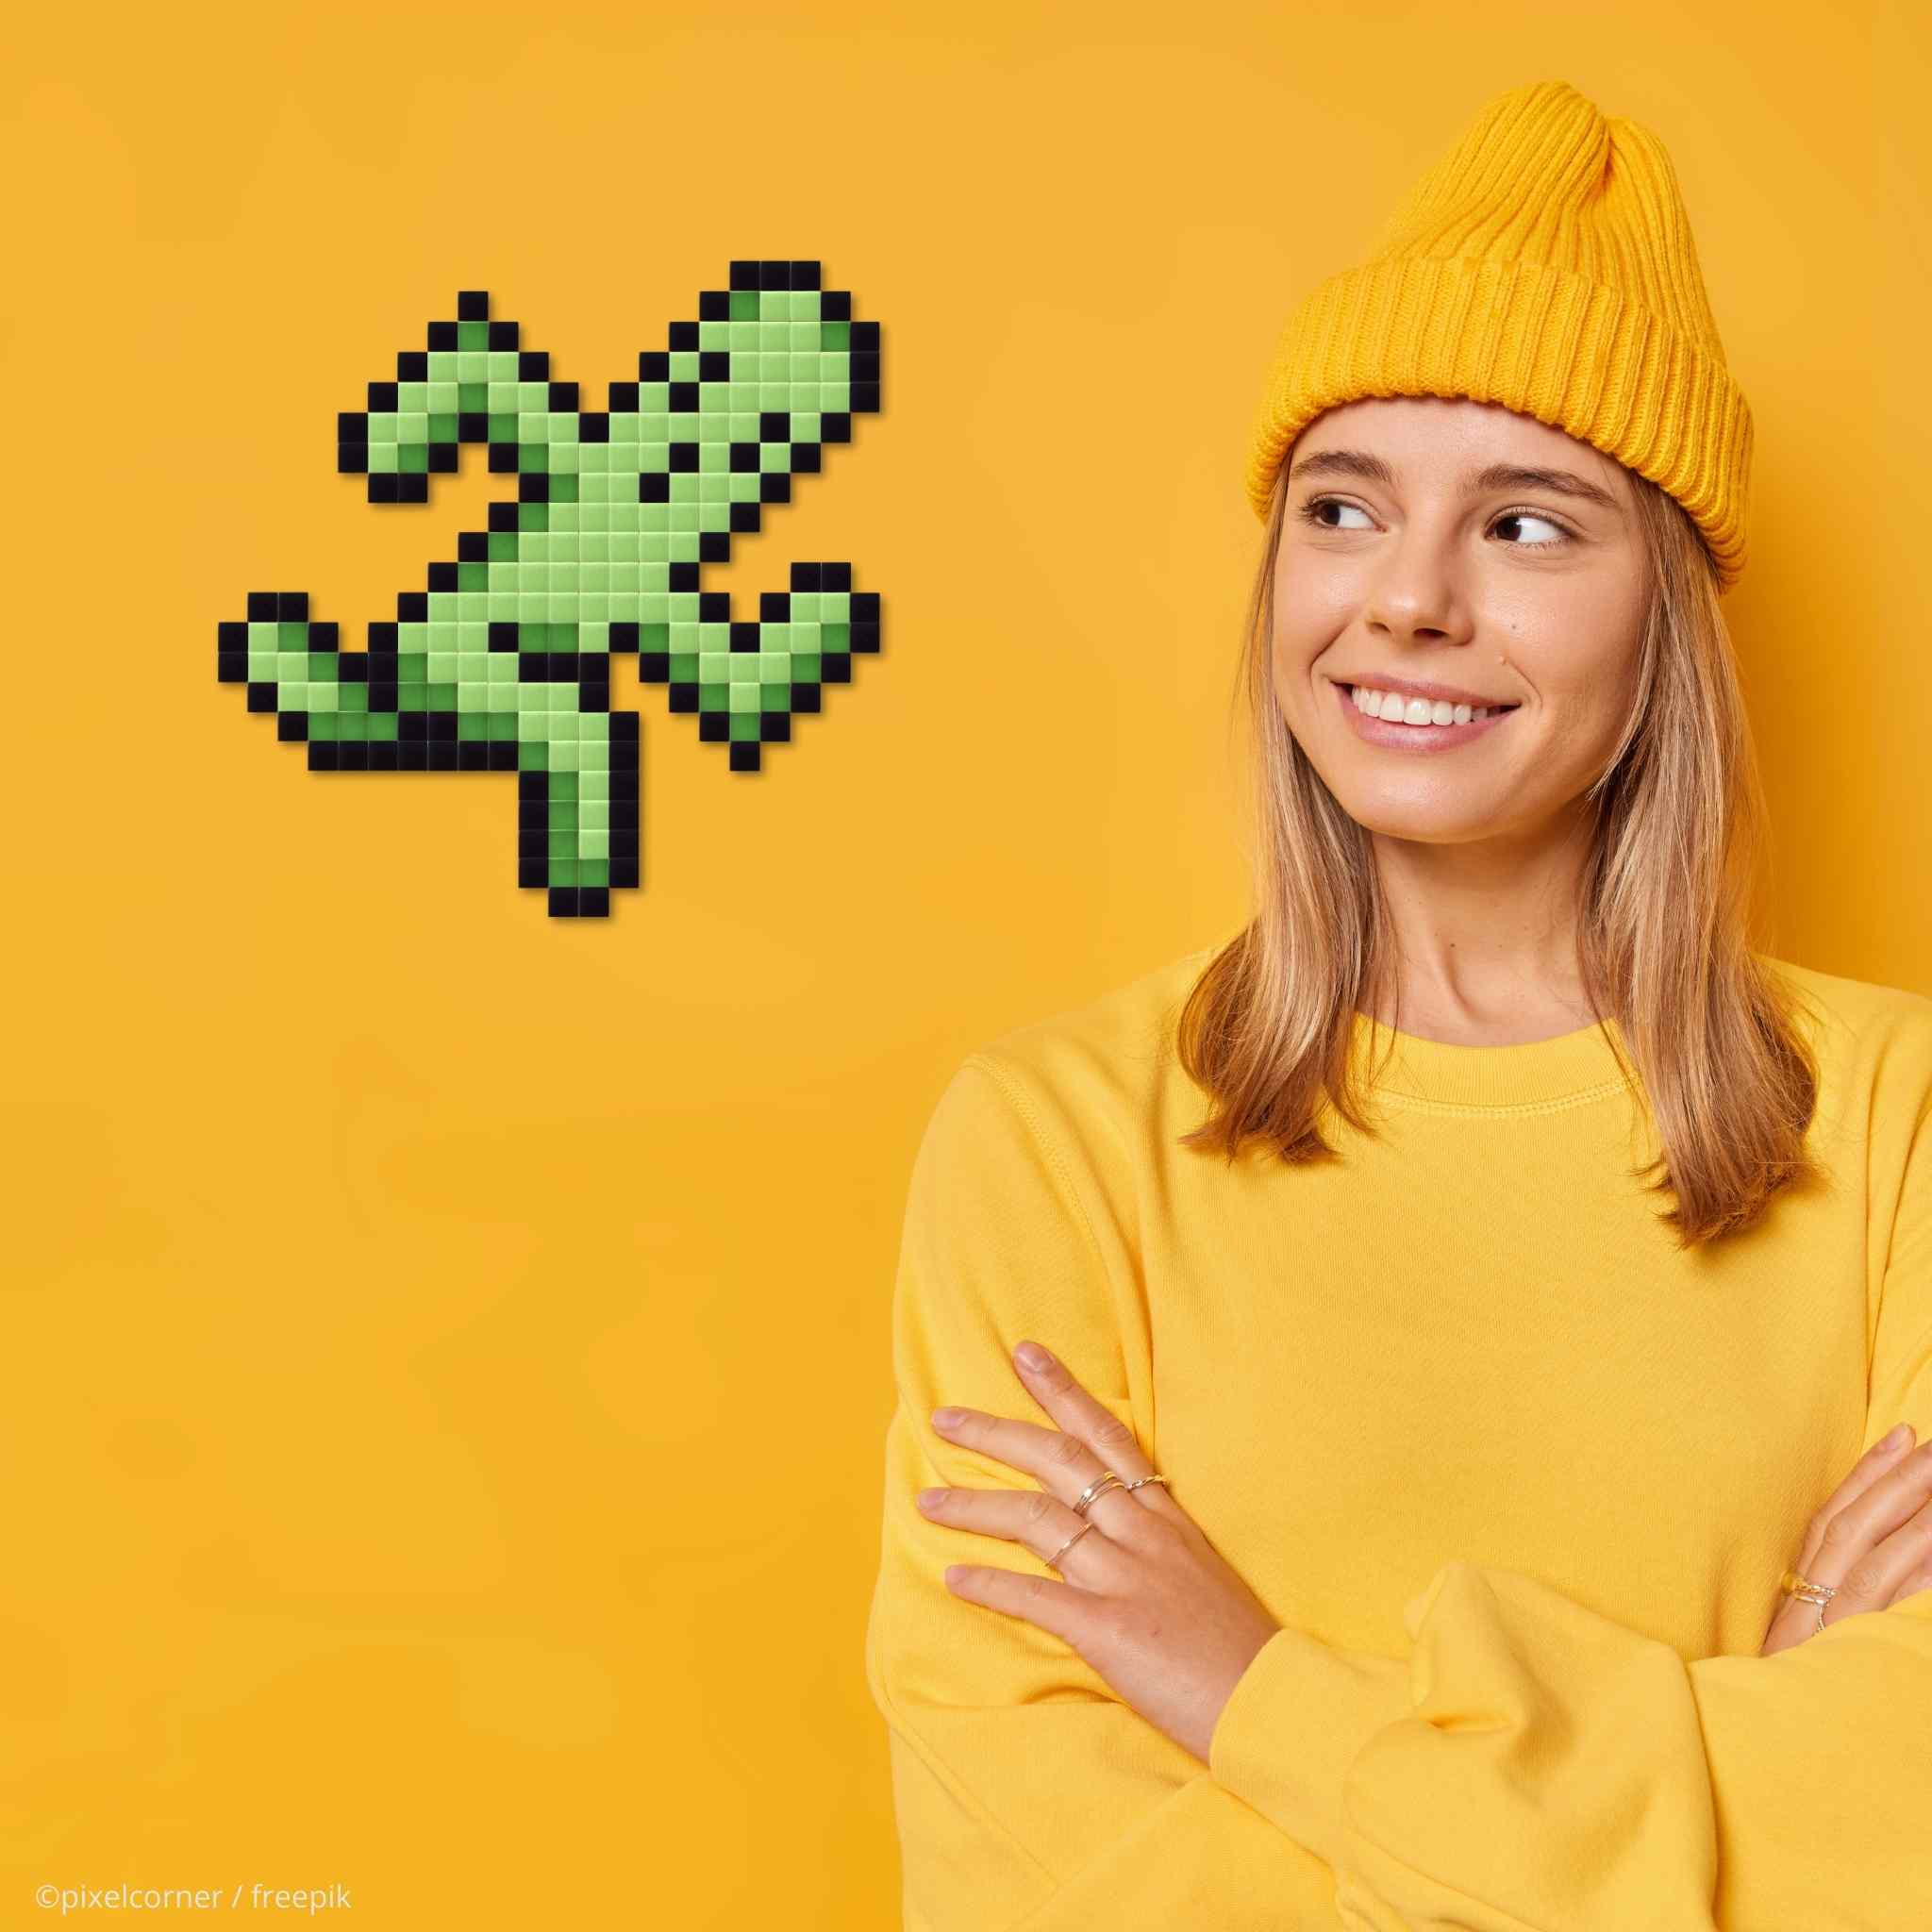 Un cactus final fantasy en pixel art qui court sur fond jaune avec jeune fille hipster et bonnet bras croisés